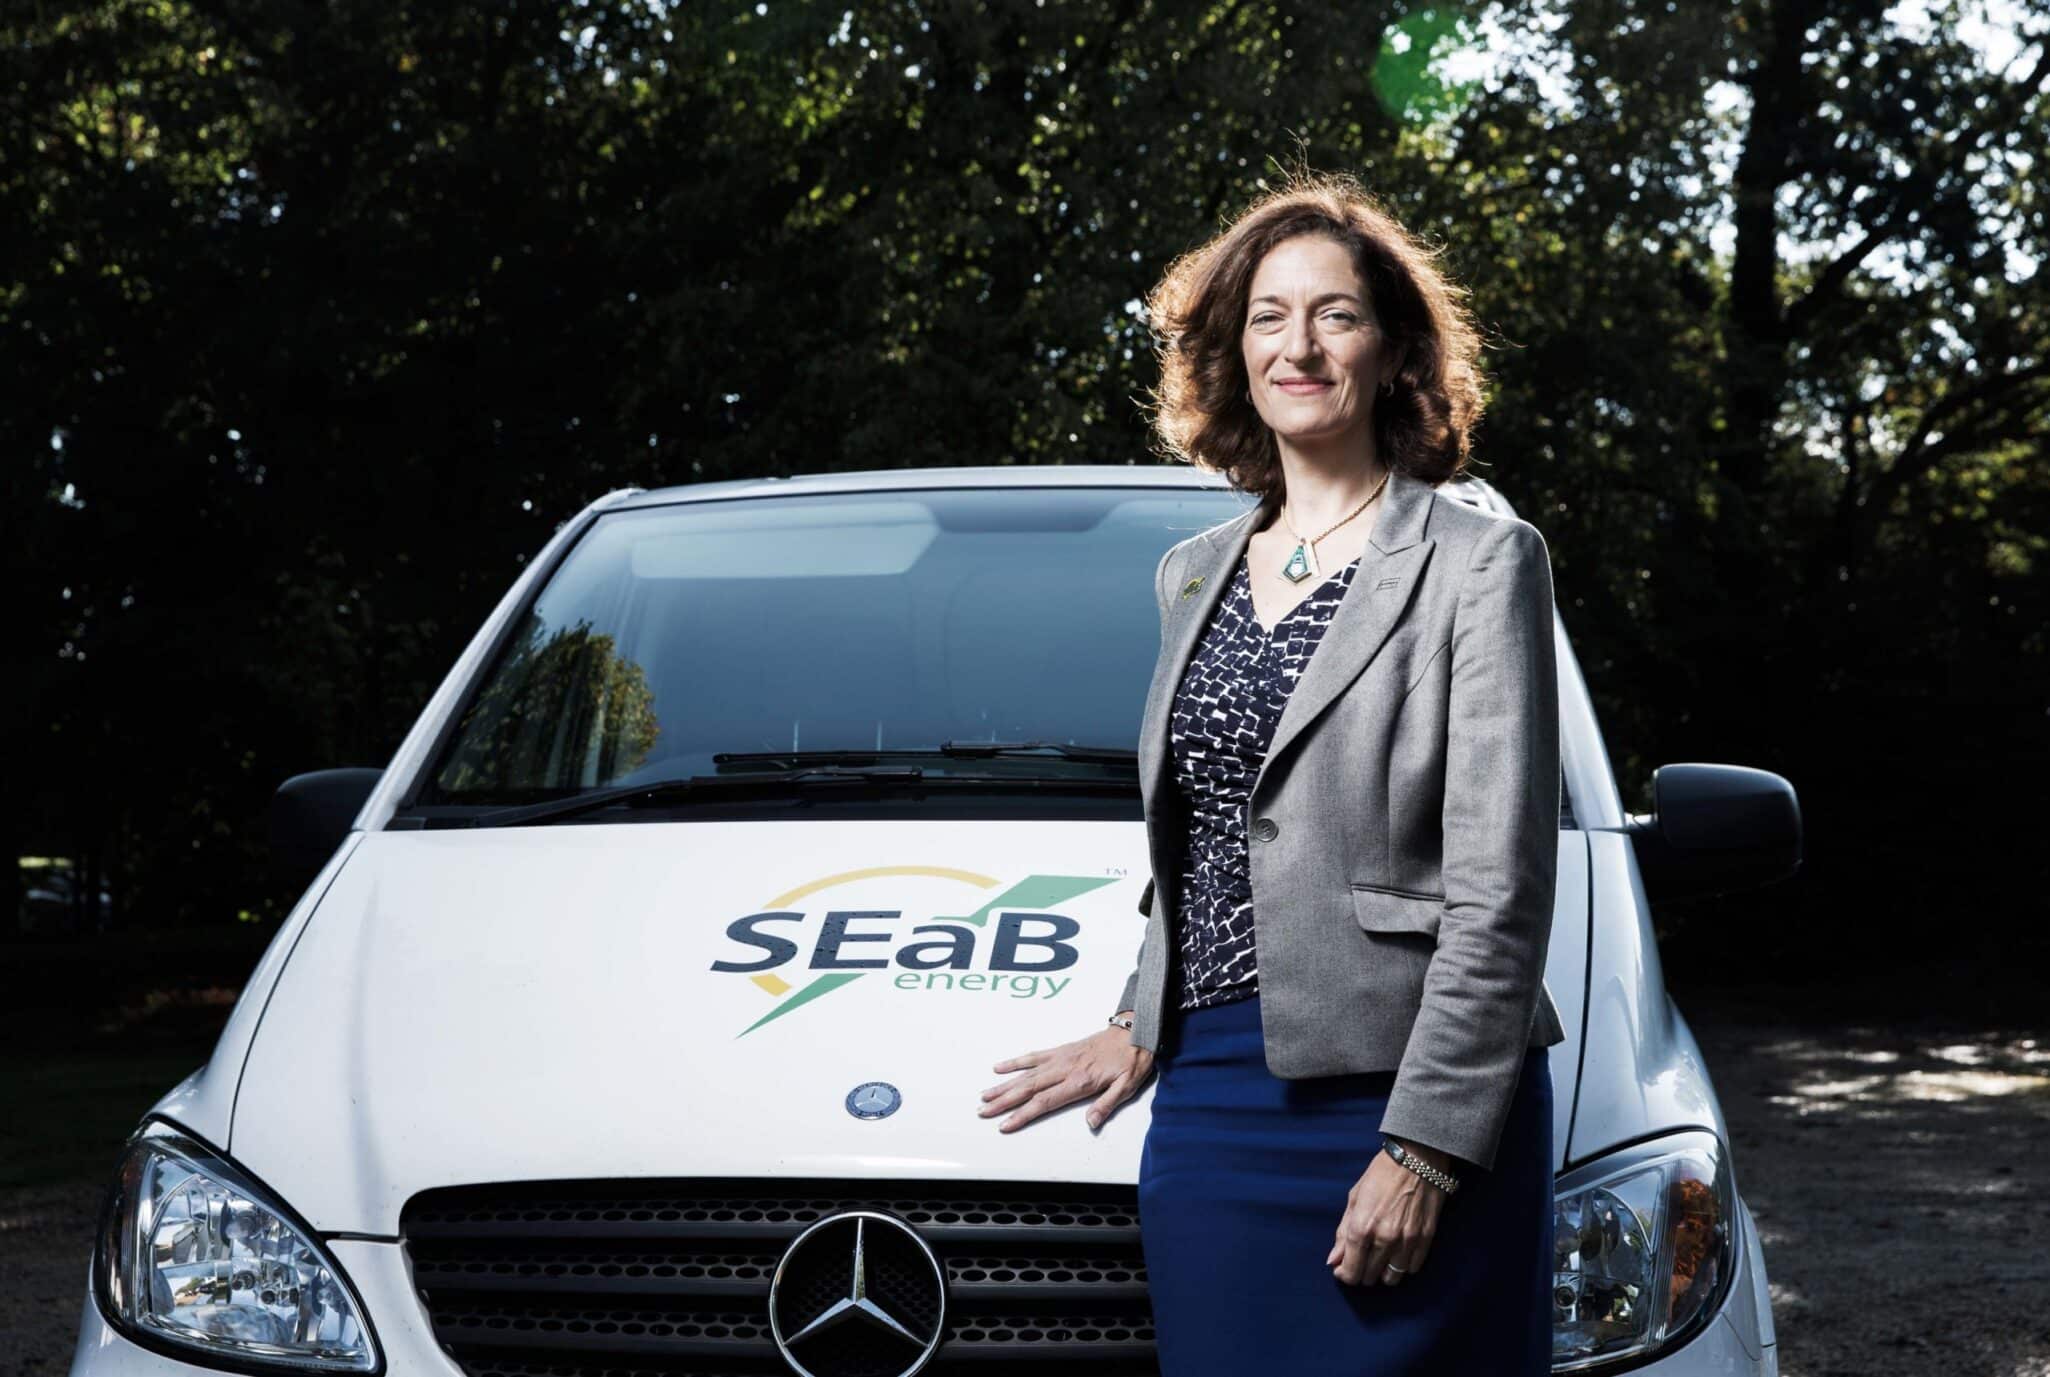 Sandra Sassow SEaB Energy